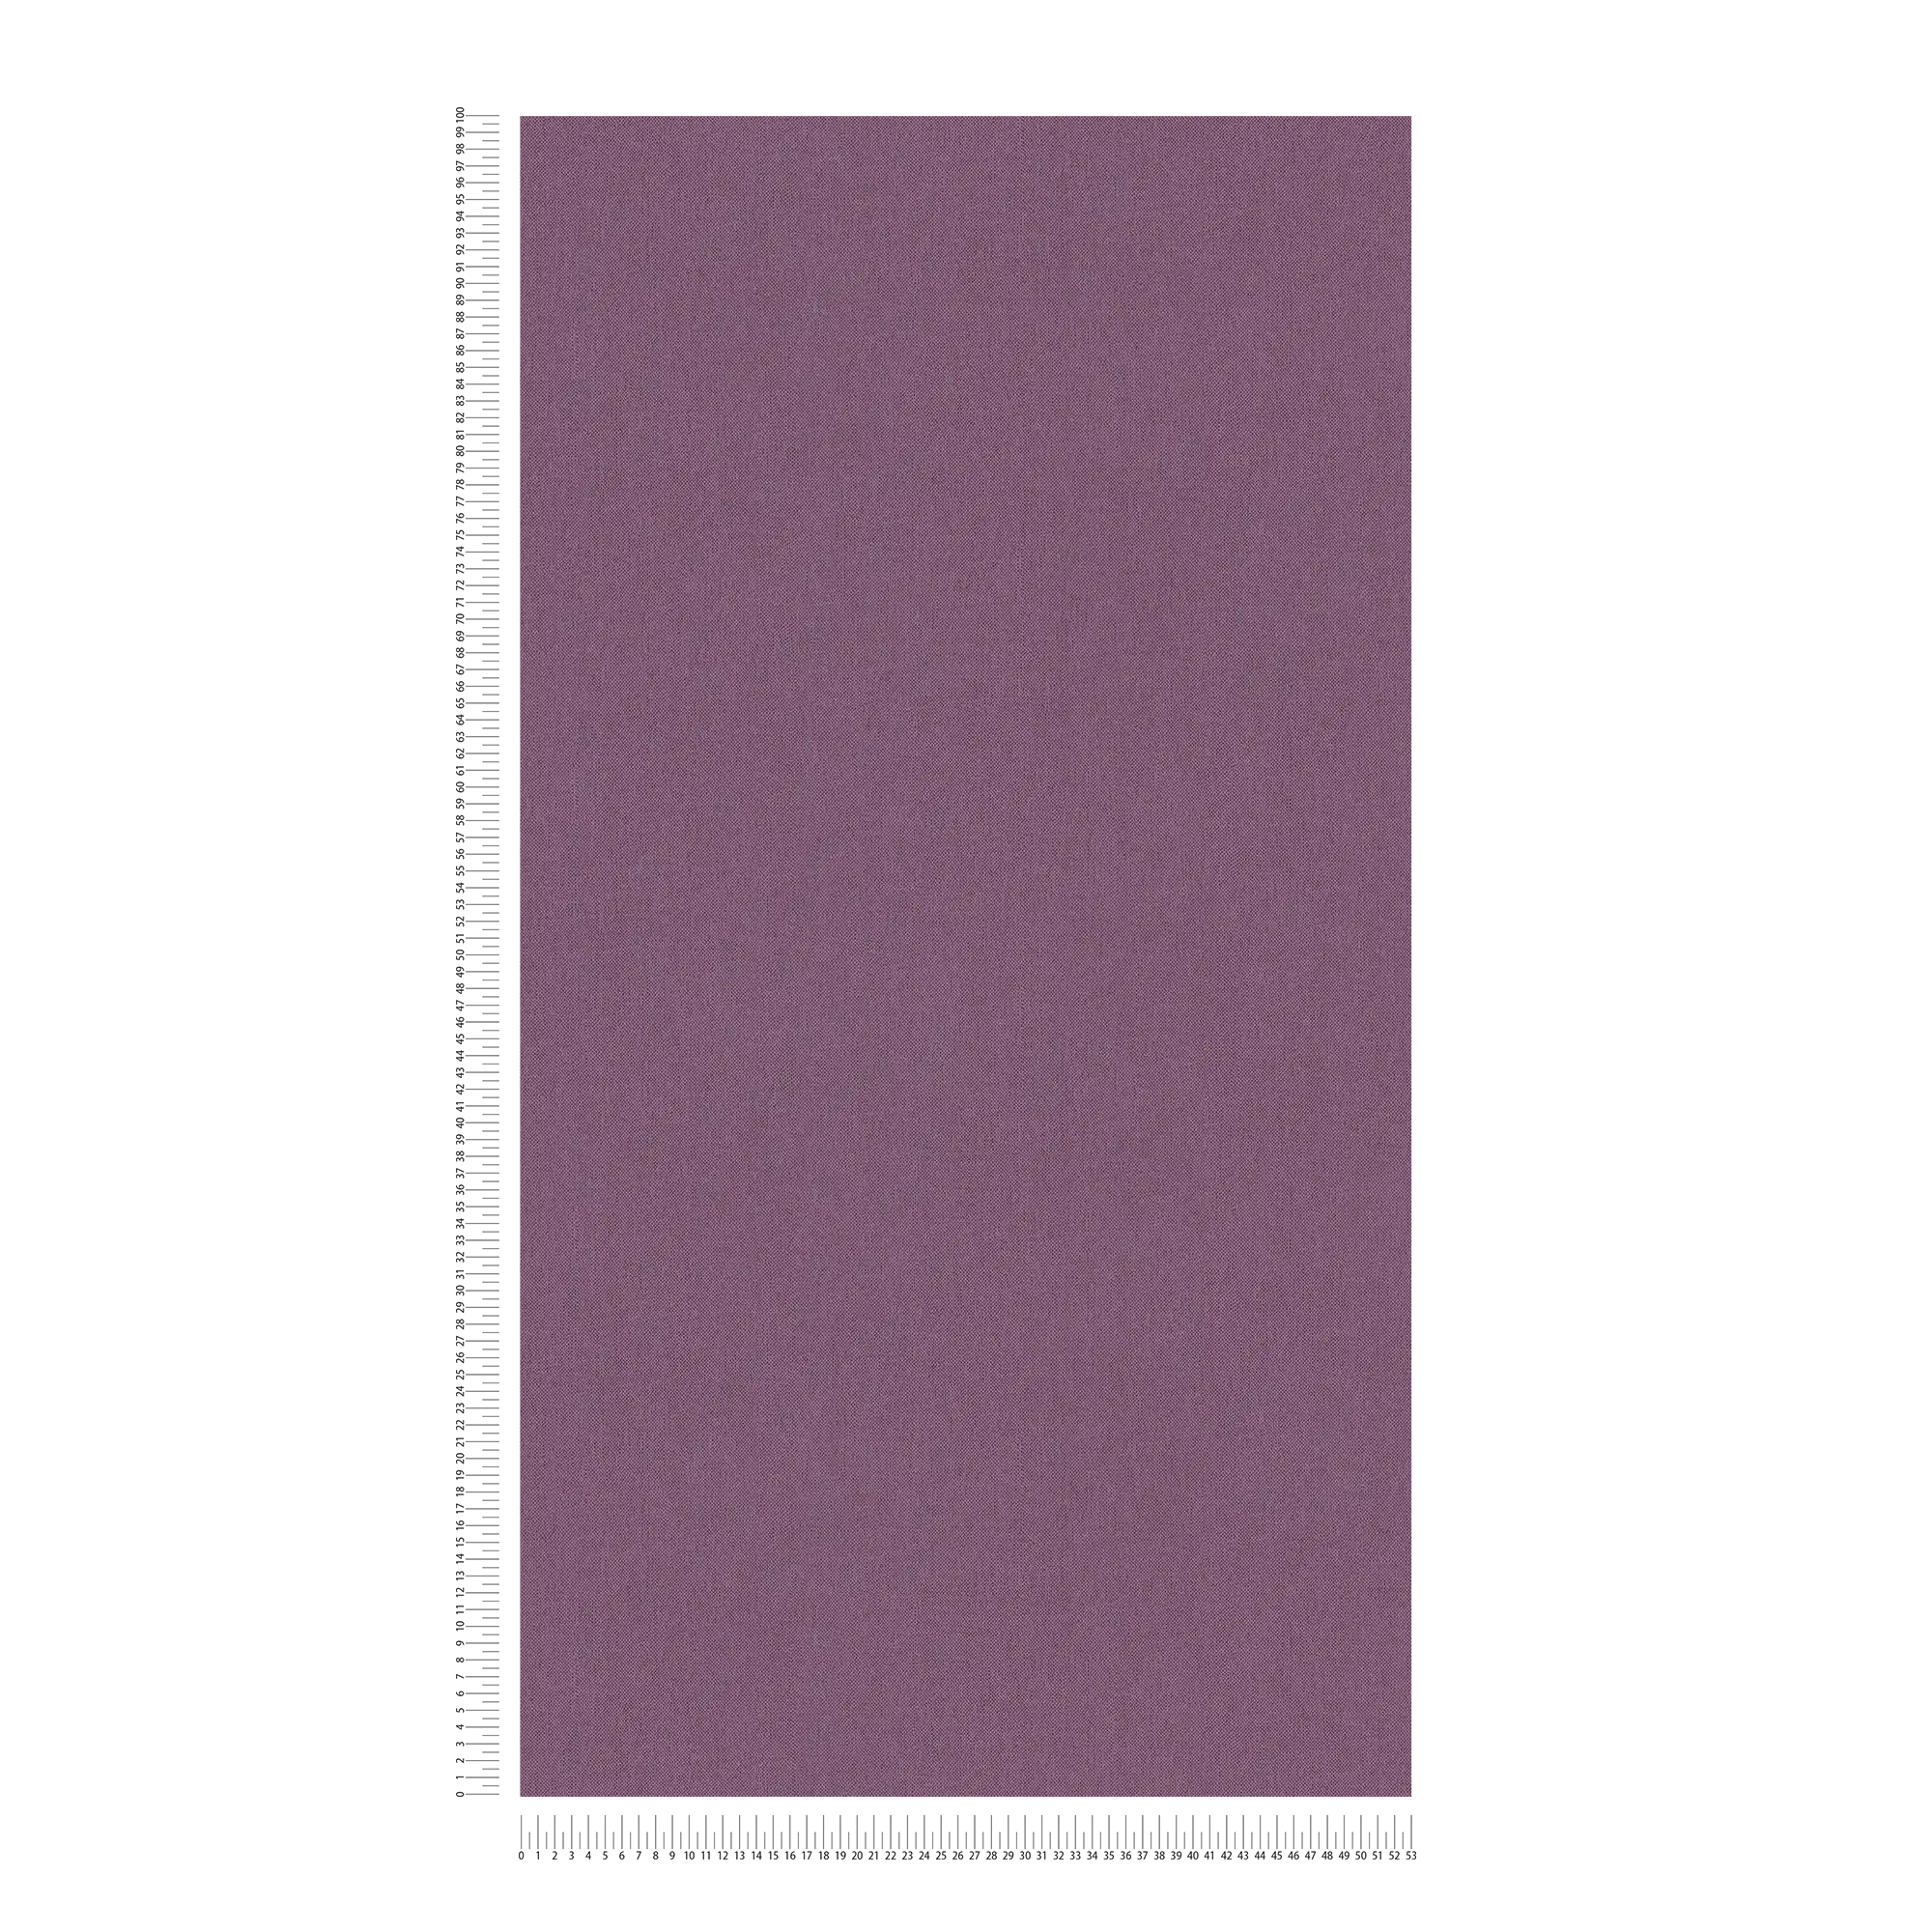             Papel pintado morado liso, aspecto textil mate y textura de tela
        